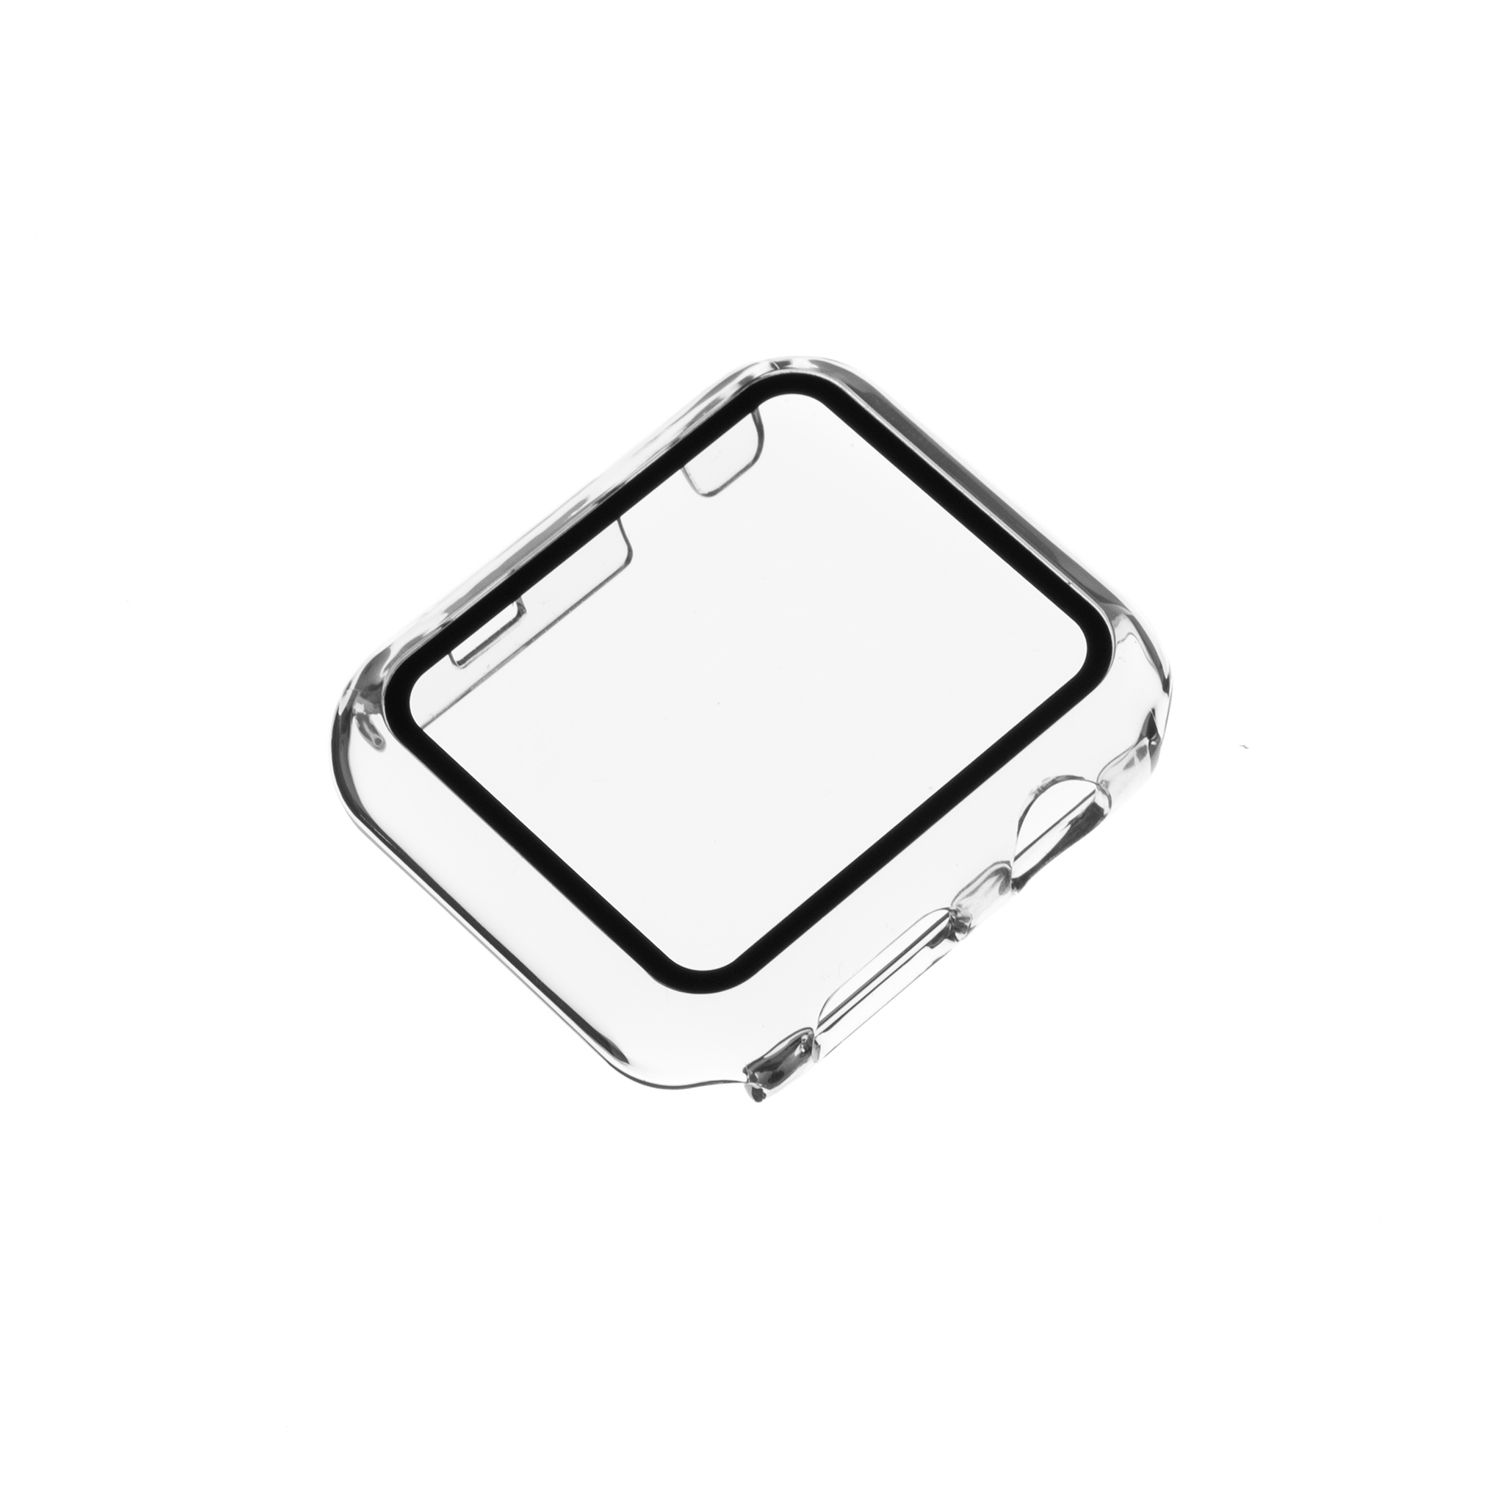 Ochranné pouzdro, obal, kryt FIXED Pure s tvrzeným sklem pro Apple Watch 40mm, čirá